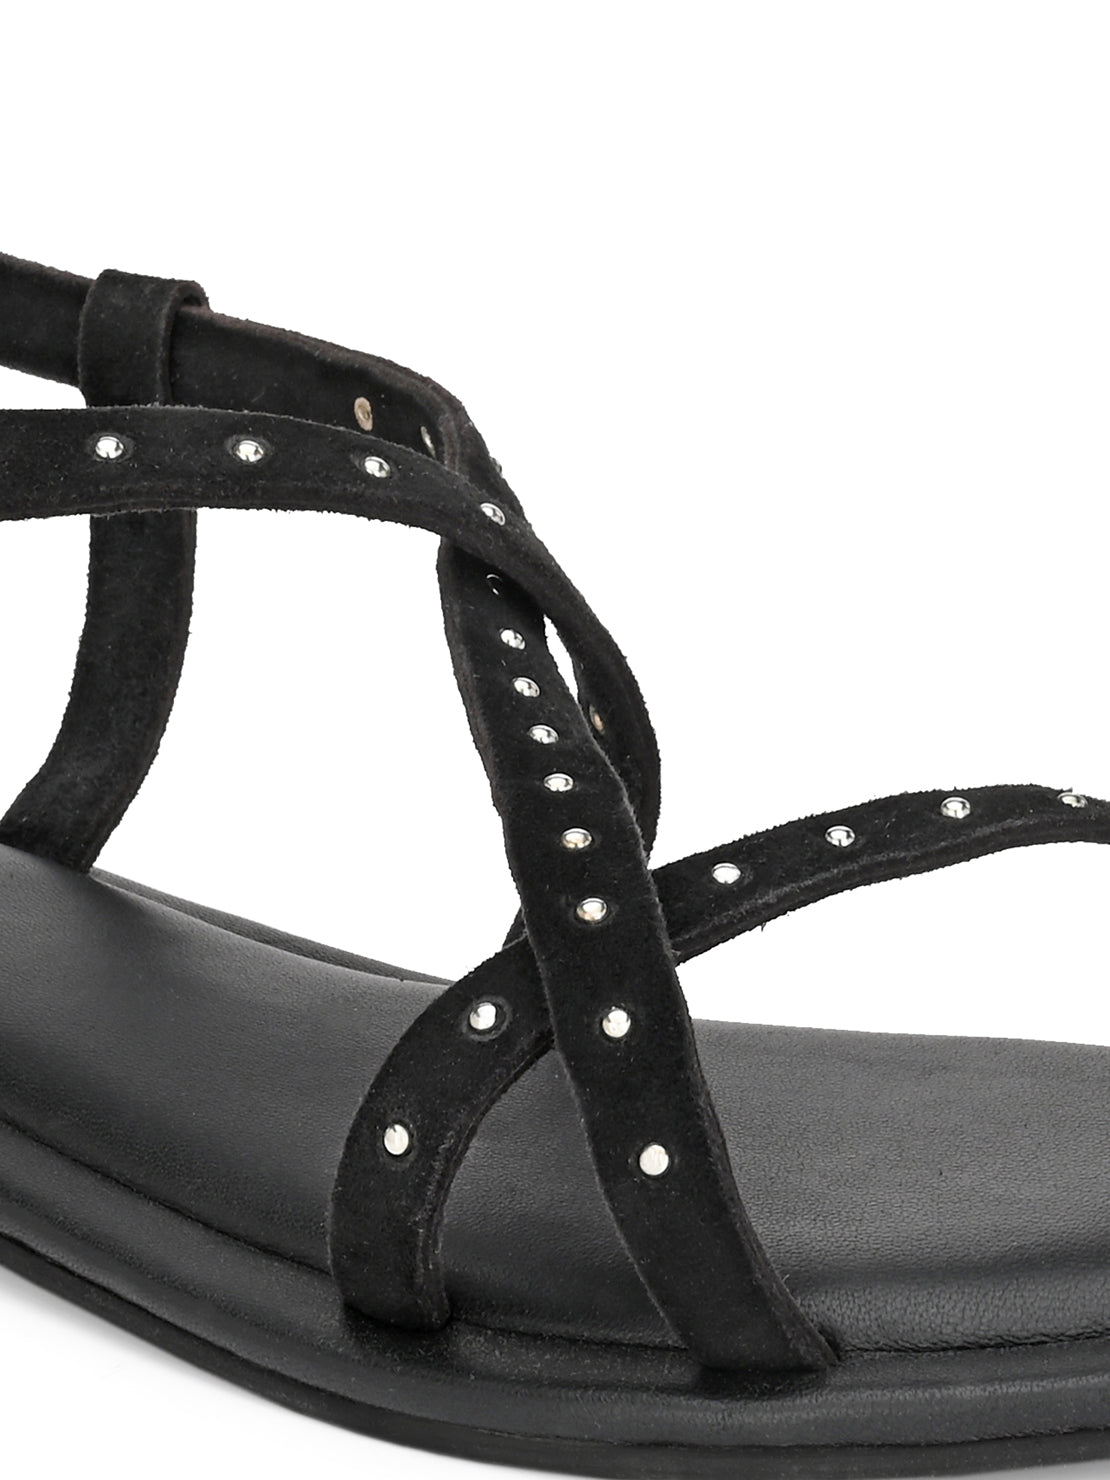 Aady Austin Women Black Open Toe Buckle Flats Sandals (AUSF19123)